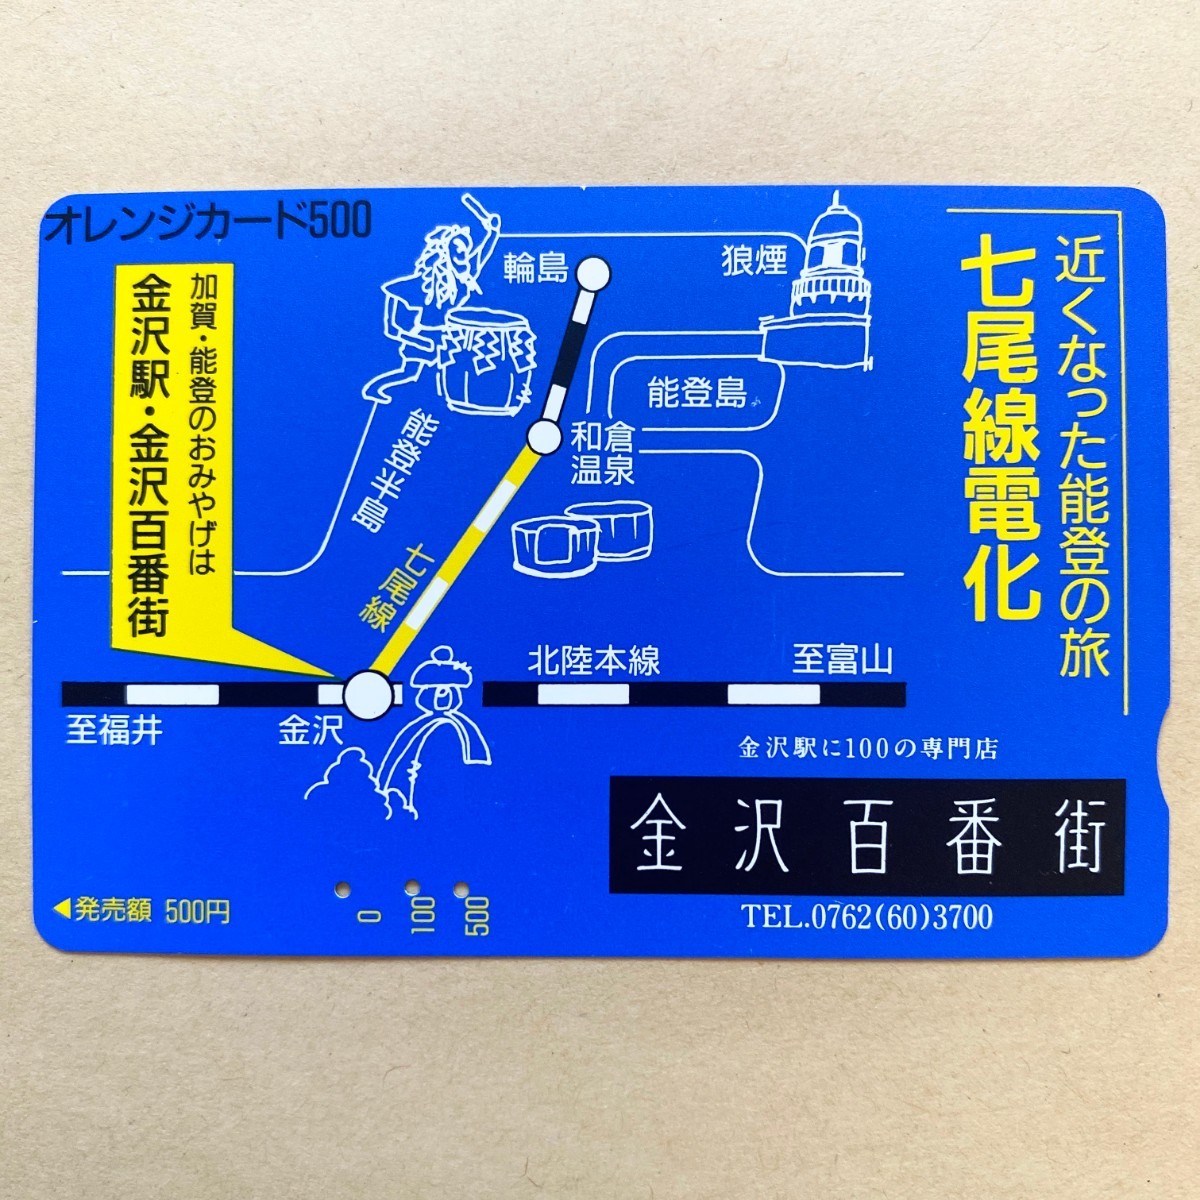 【使用済】 オレンジカード JR西日本 七尾線電化 金沢百番街_画像1